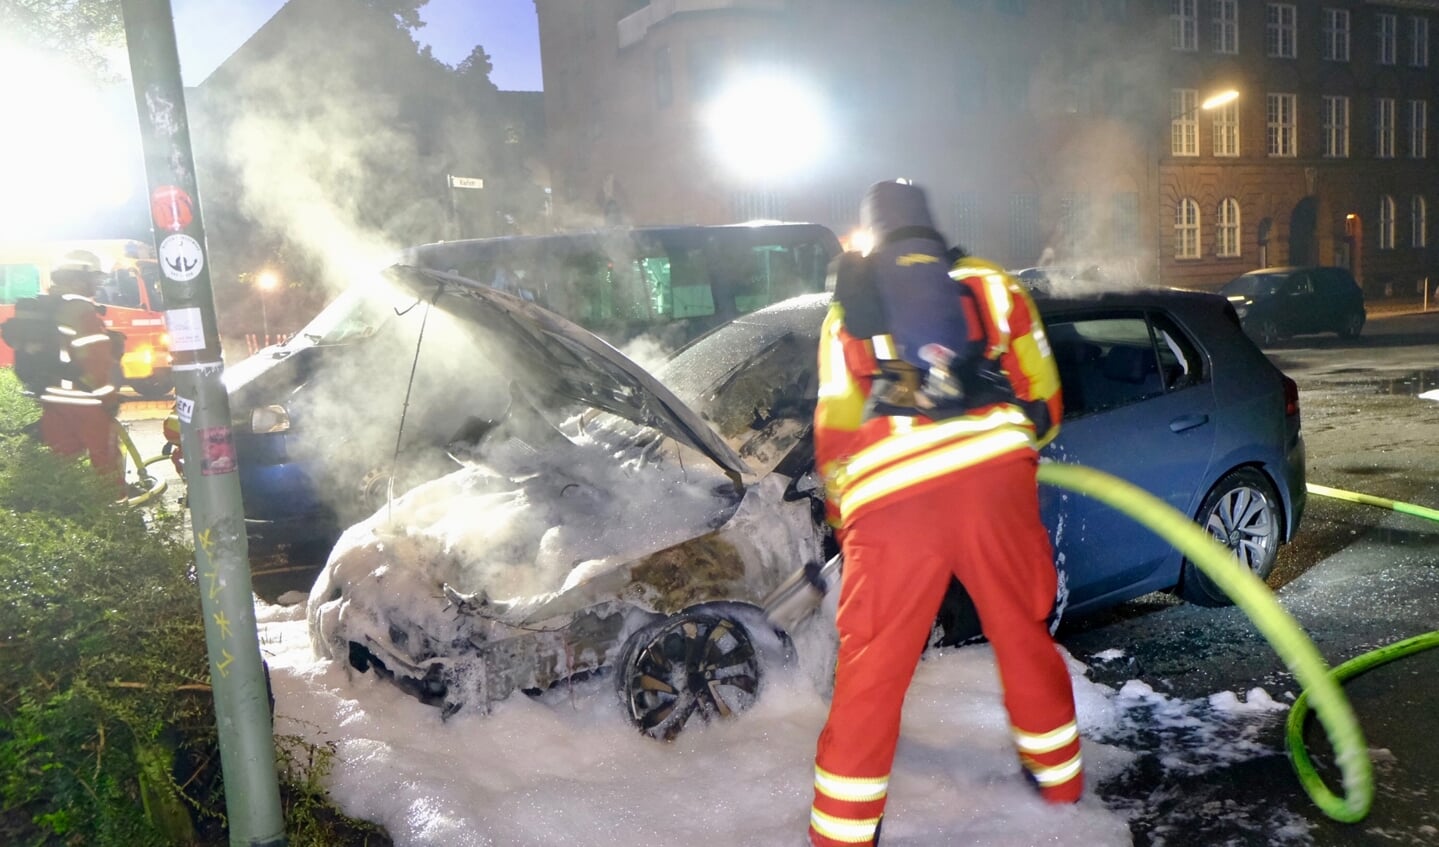 Begge biler blev ødelagt af flammerne. Brandfolkene kunne dog forhindre, at ilden bredte sig til andre køretøjer. Foto: 